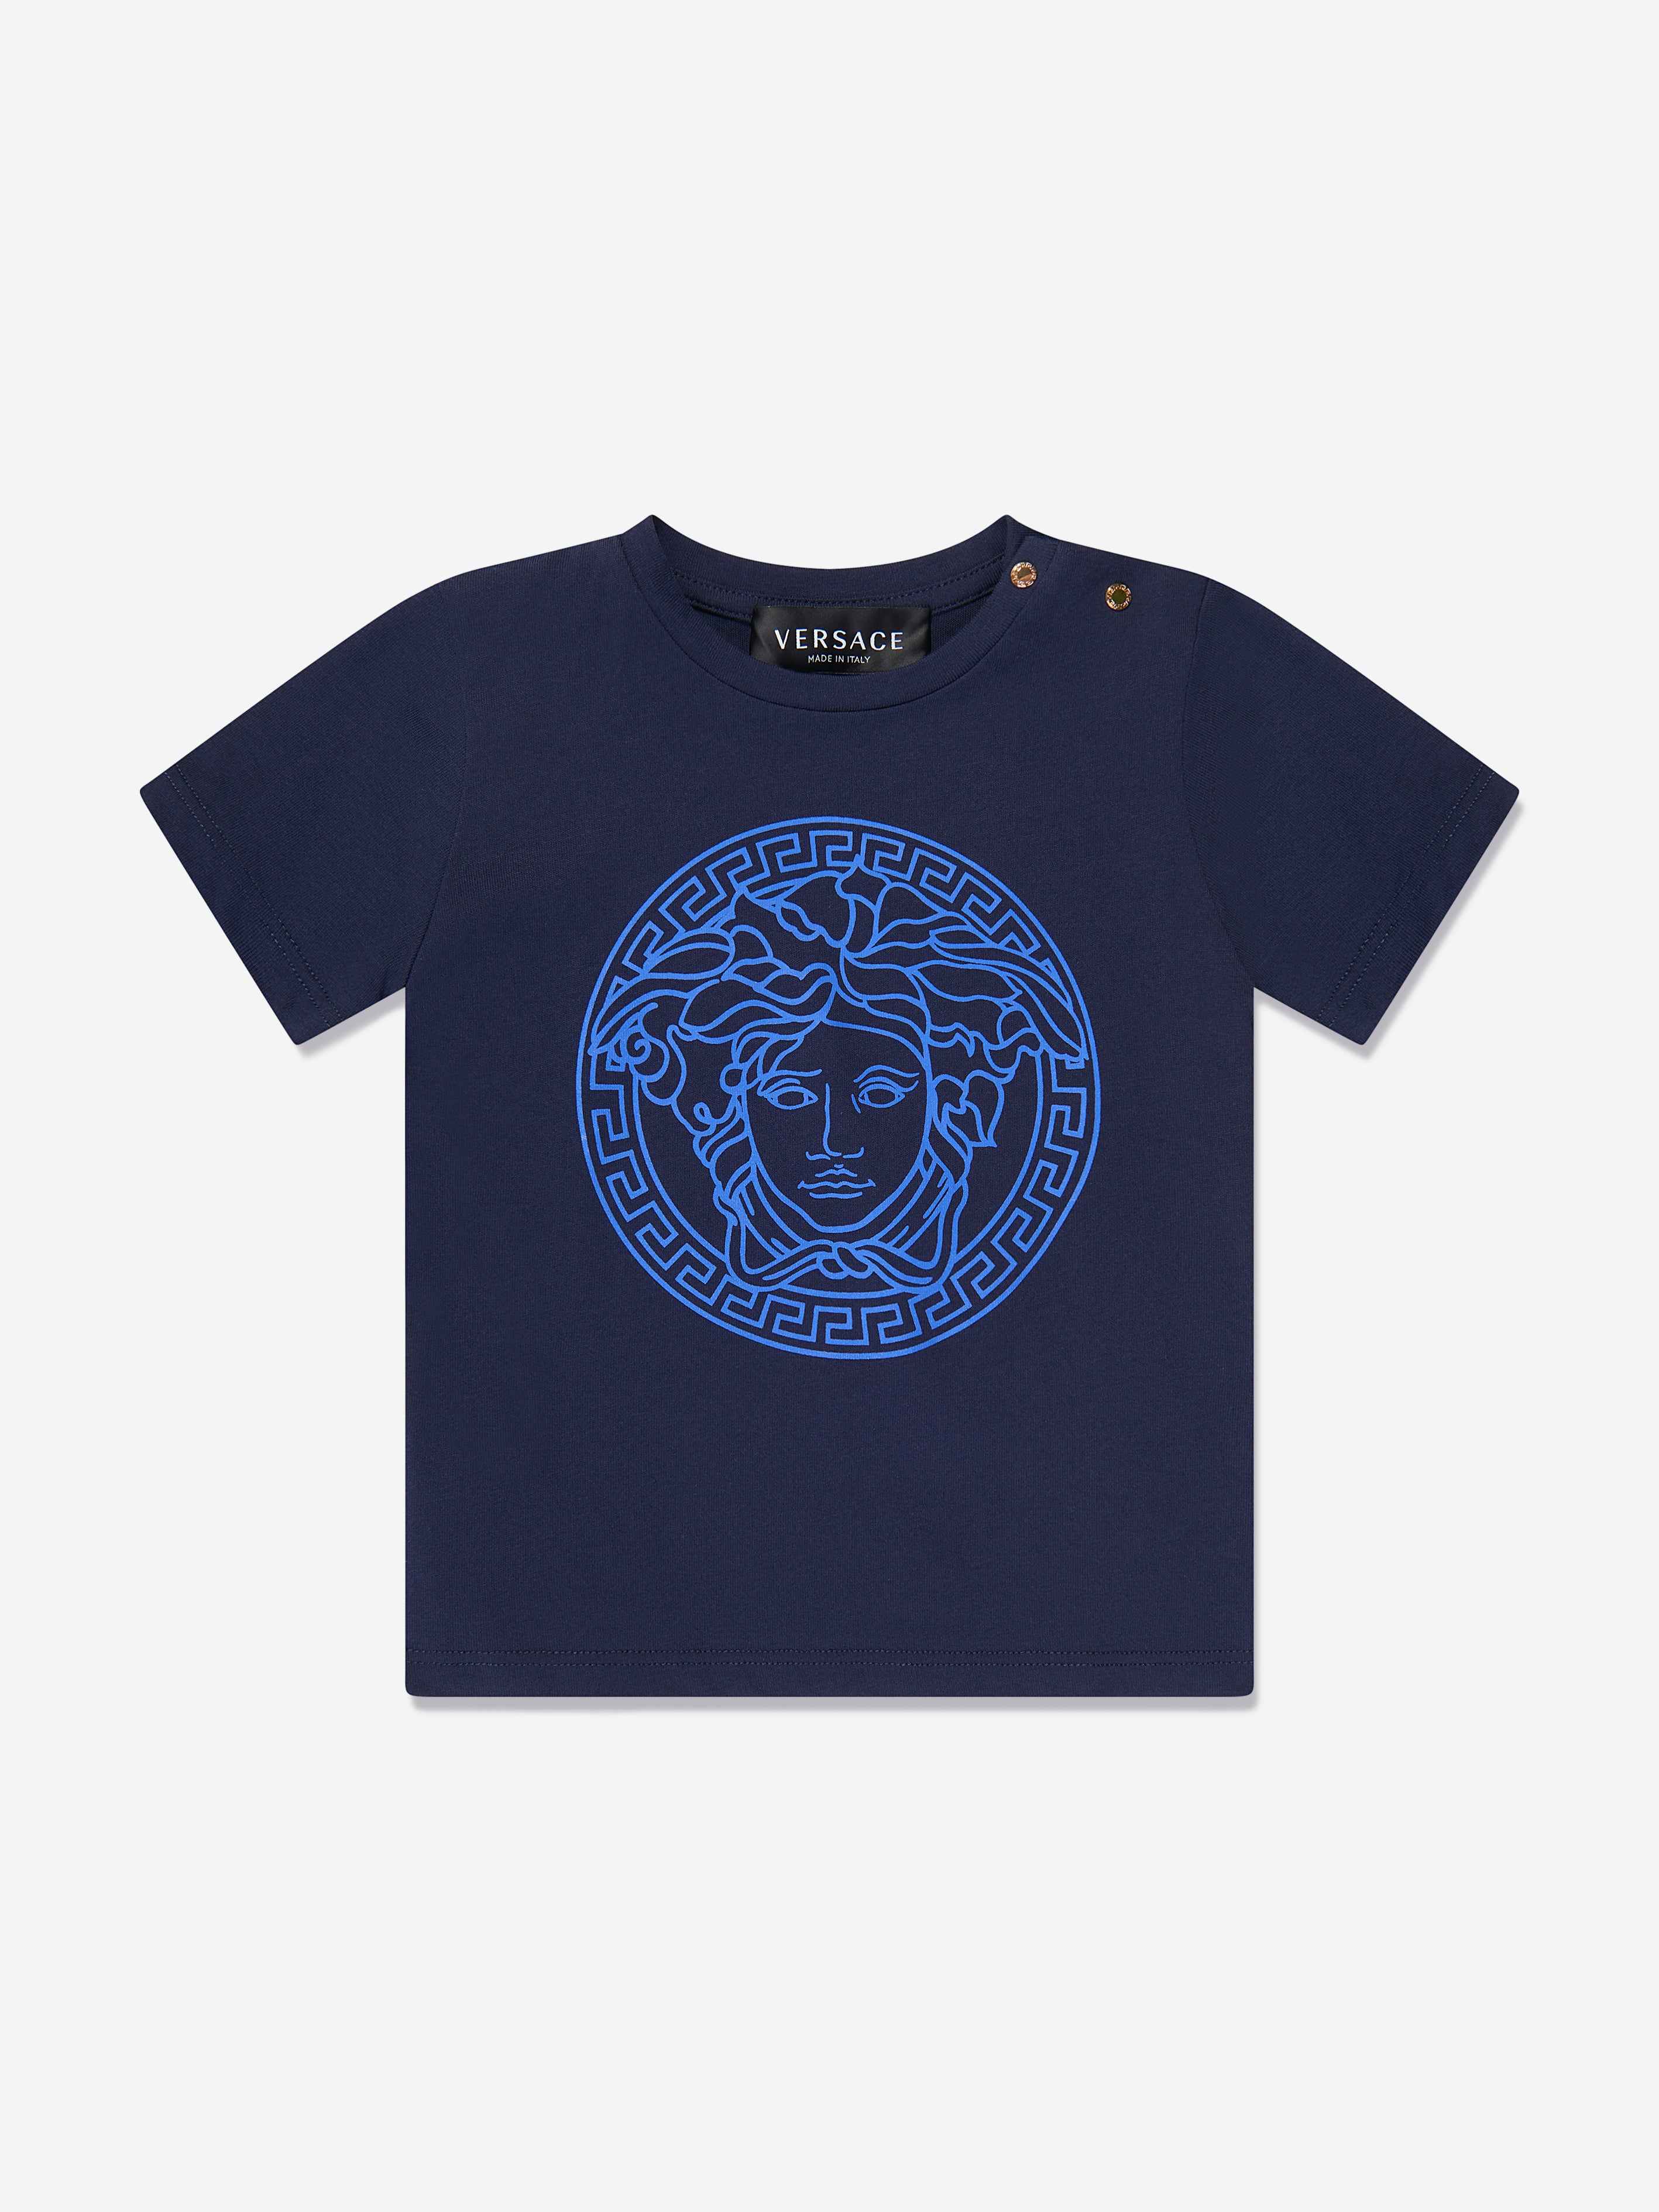 Topmøde sortere hvede Versace Baby Medusa Logo T-Shirt in Navy | Childsplay Clothing